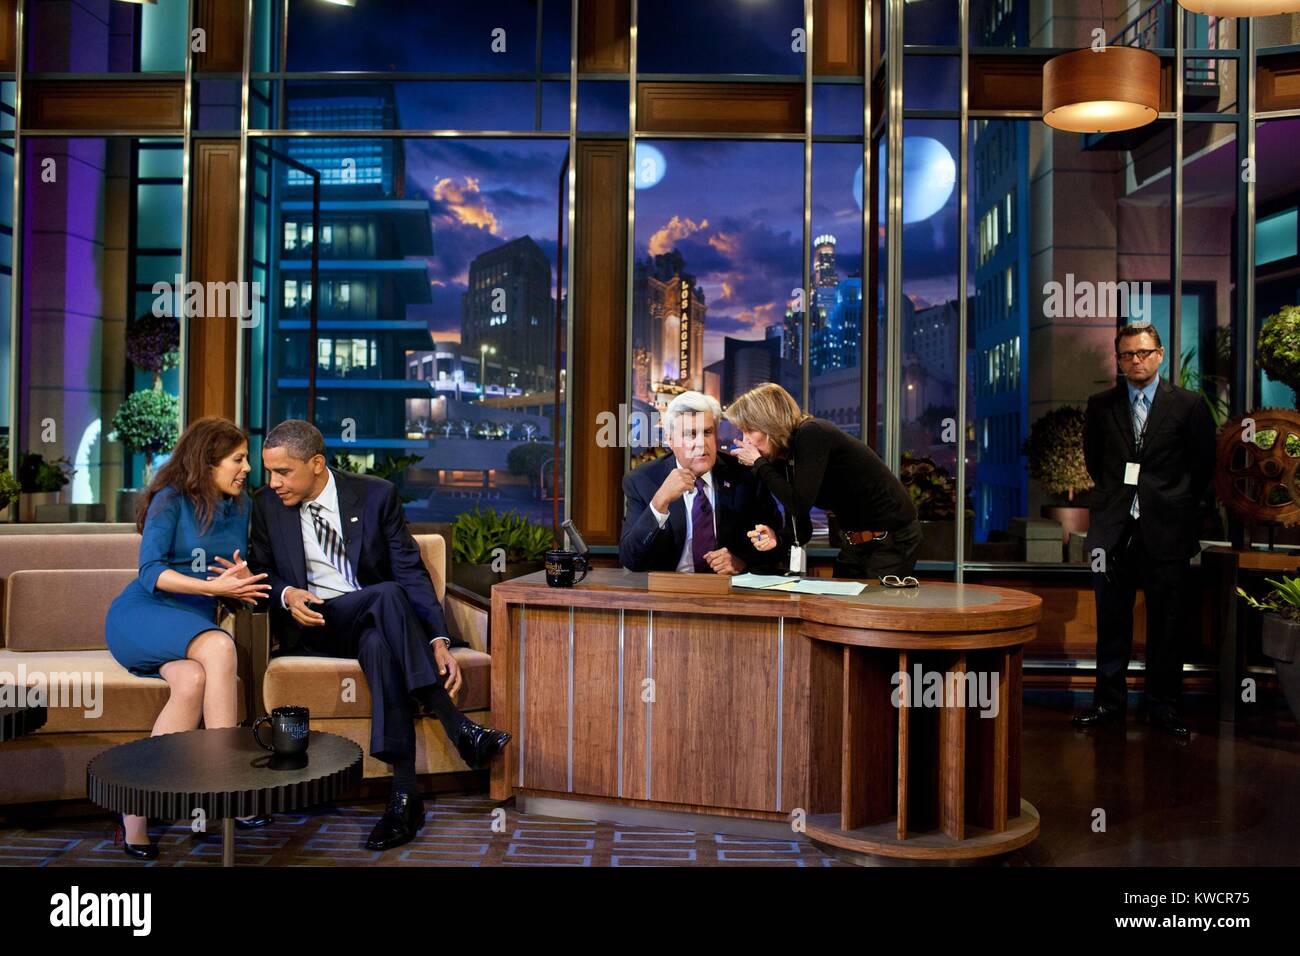 Präsident Barack Obama spricht mit Co-produzent Michele Tasoff während einer Pause in Taping. Am Set von "The Tonight Show" mit Jay Leno" bei NBC Studios in Burbank, Calif., Okt. 25, 2011 (BSLOC 2015 3 107) Stockfoto